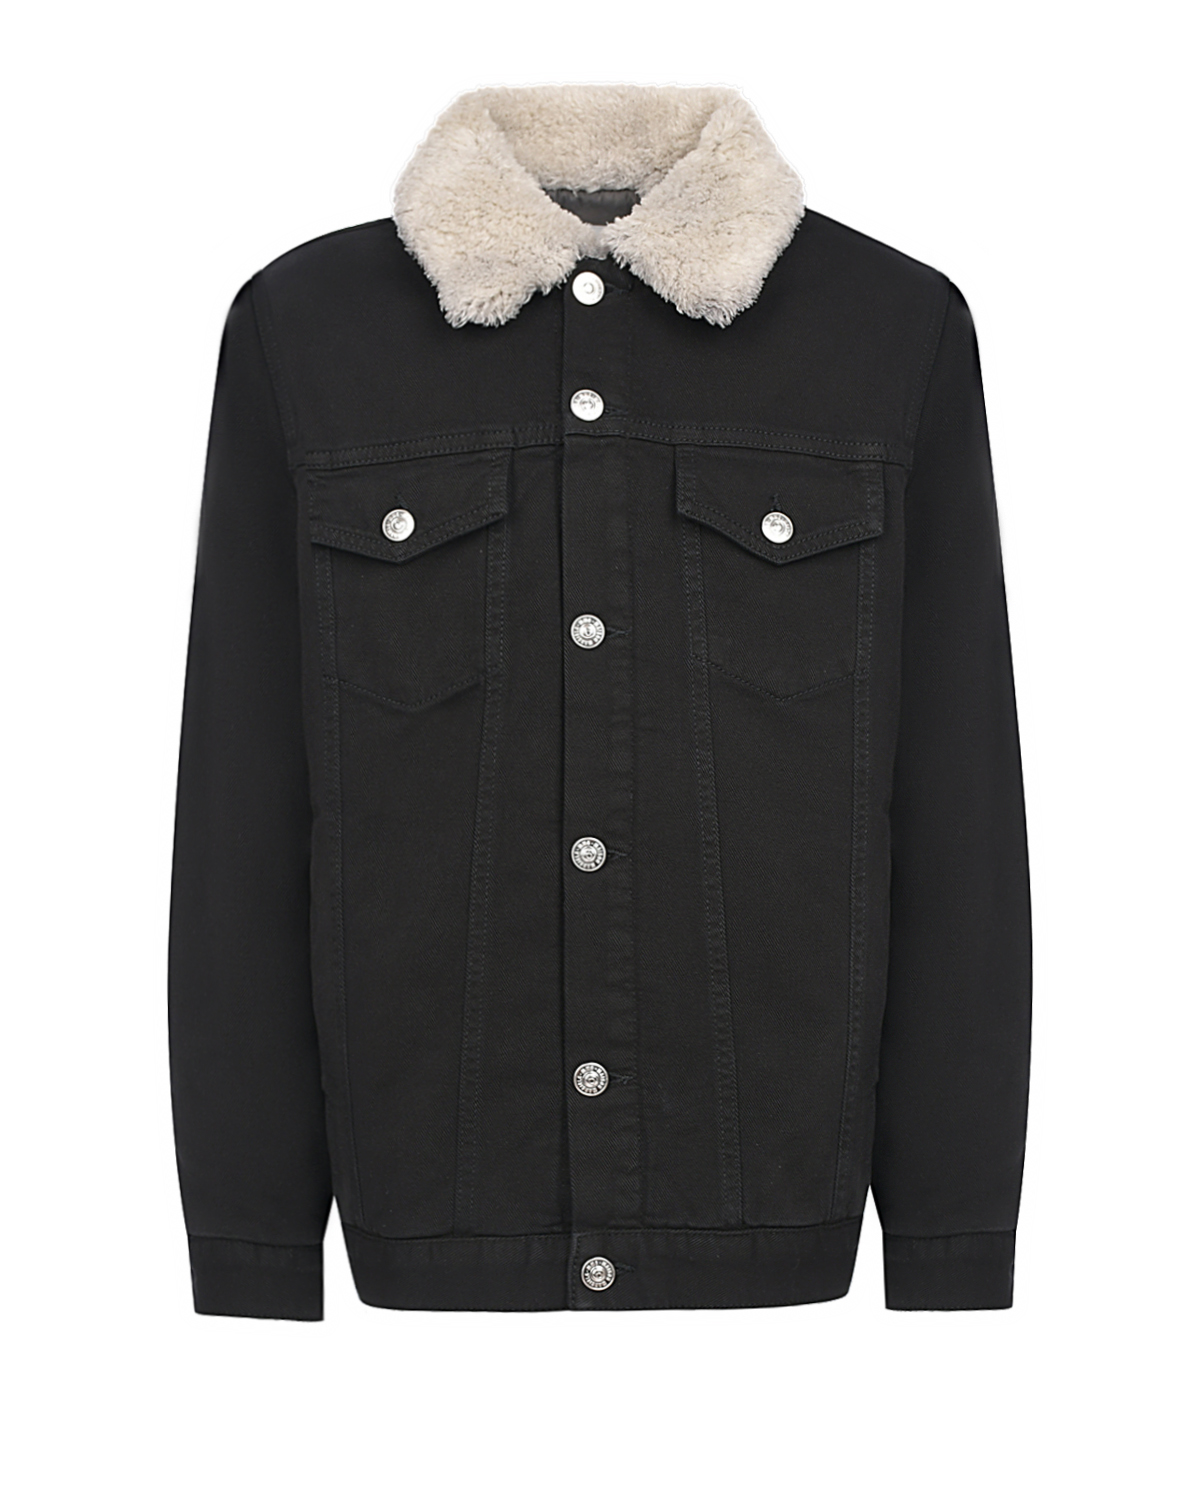 Джинсовая куртка с плюшевым воротником MM6 Maison Margiela детская, размер 140, цвет черный - фото 1